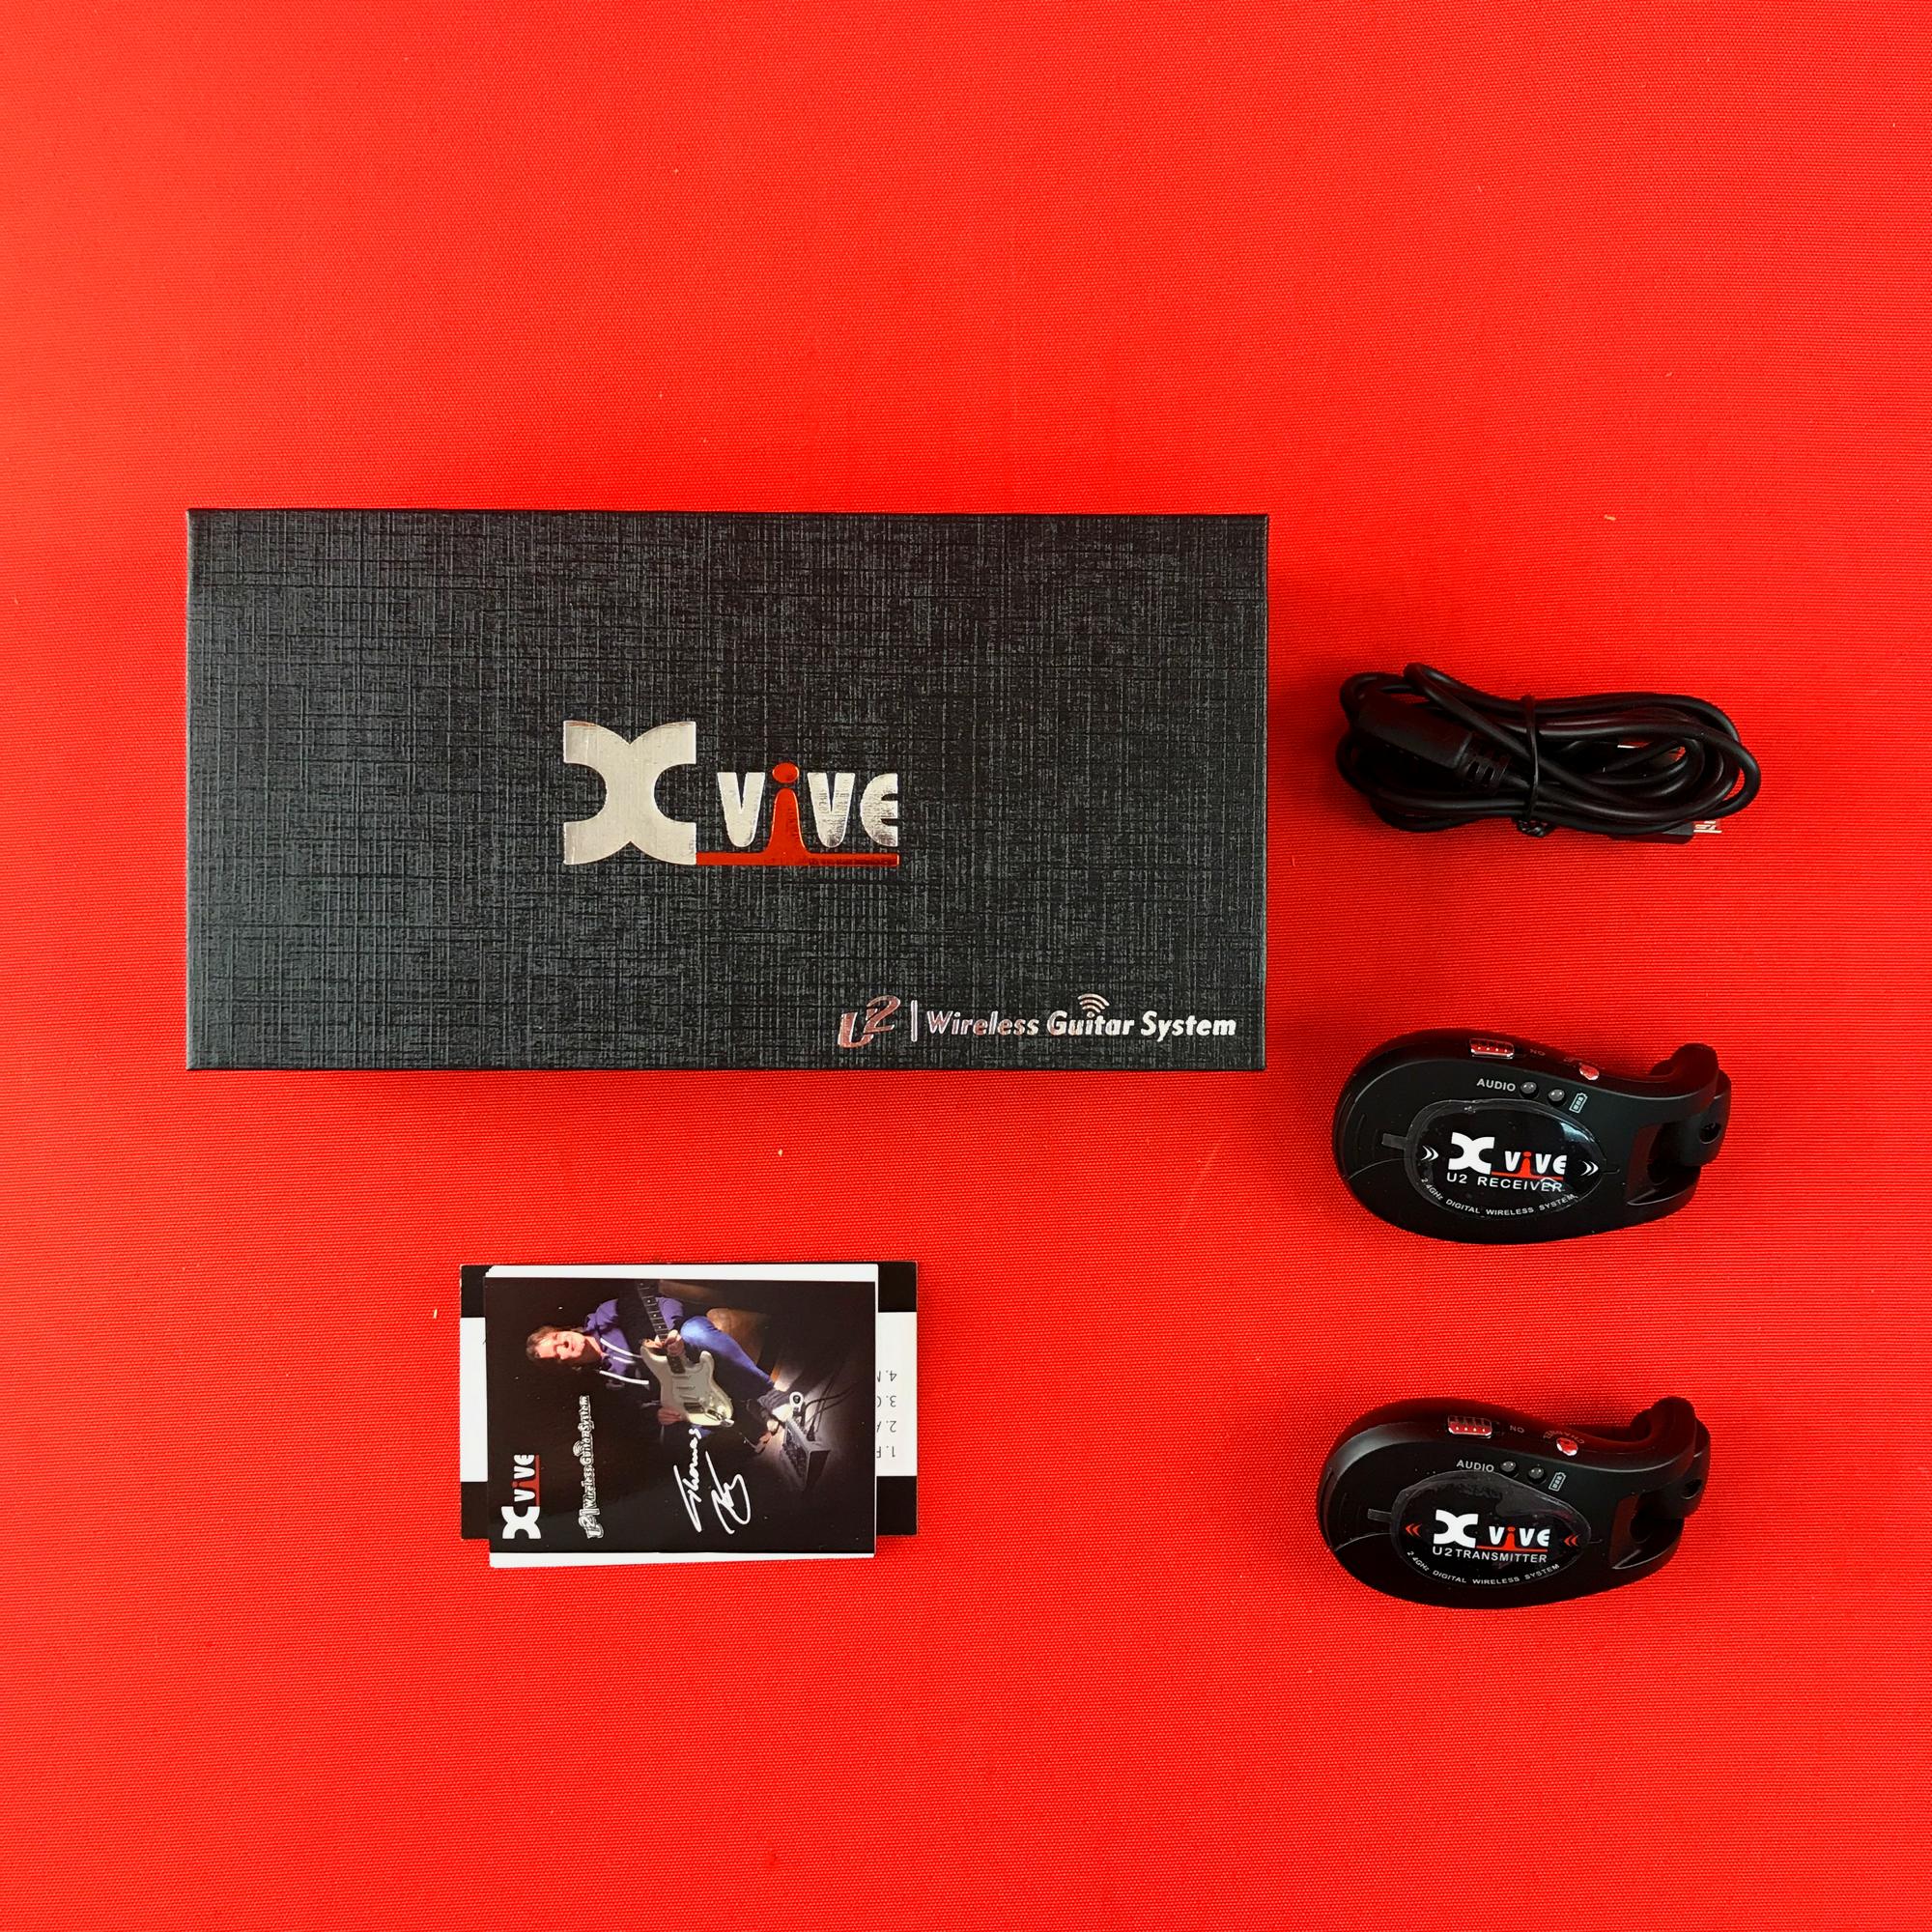 [USED] Xvive U2 2.4GHZ Wireless Guitar System, Black